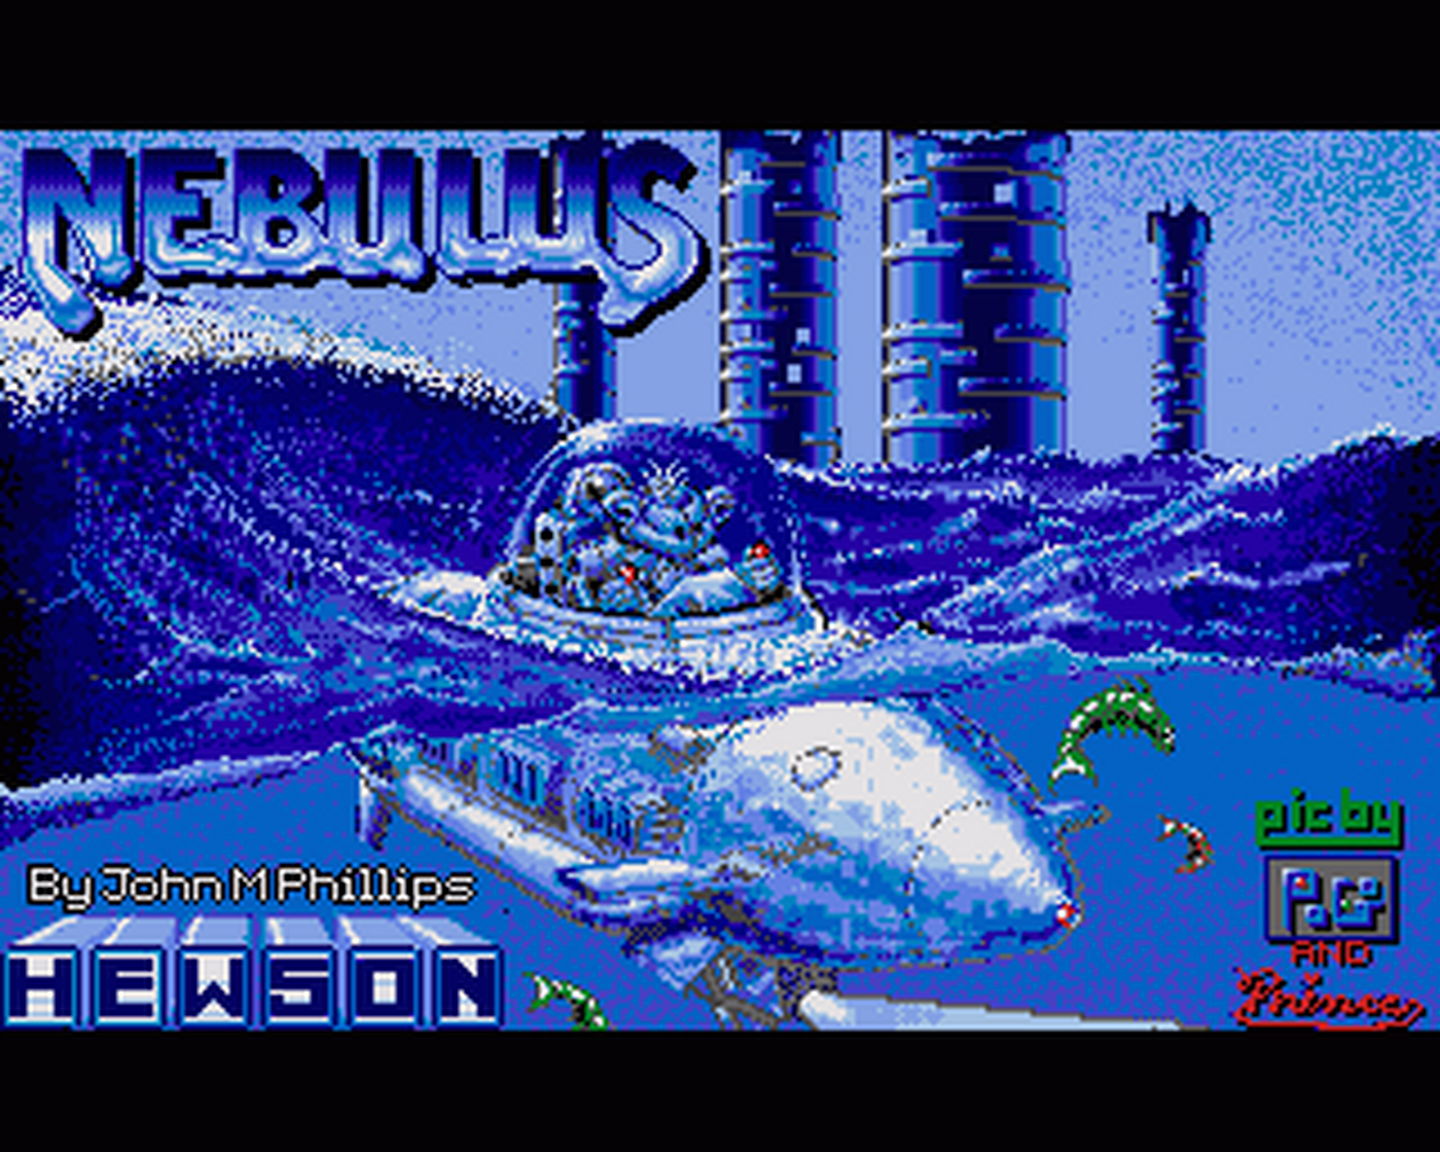 Amiga GameBase Nebulus Hewson 1988